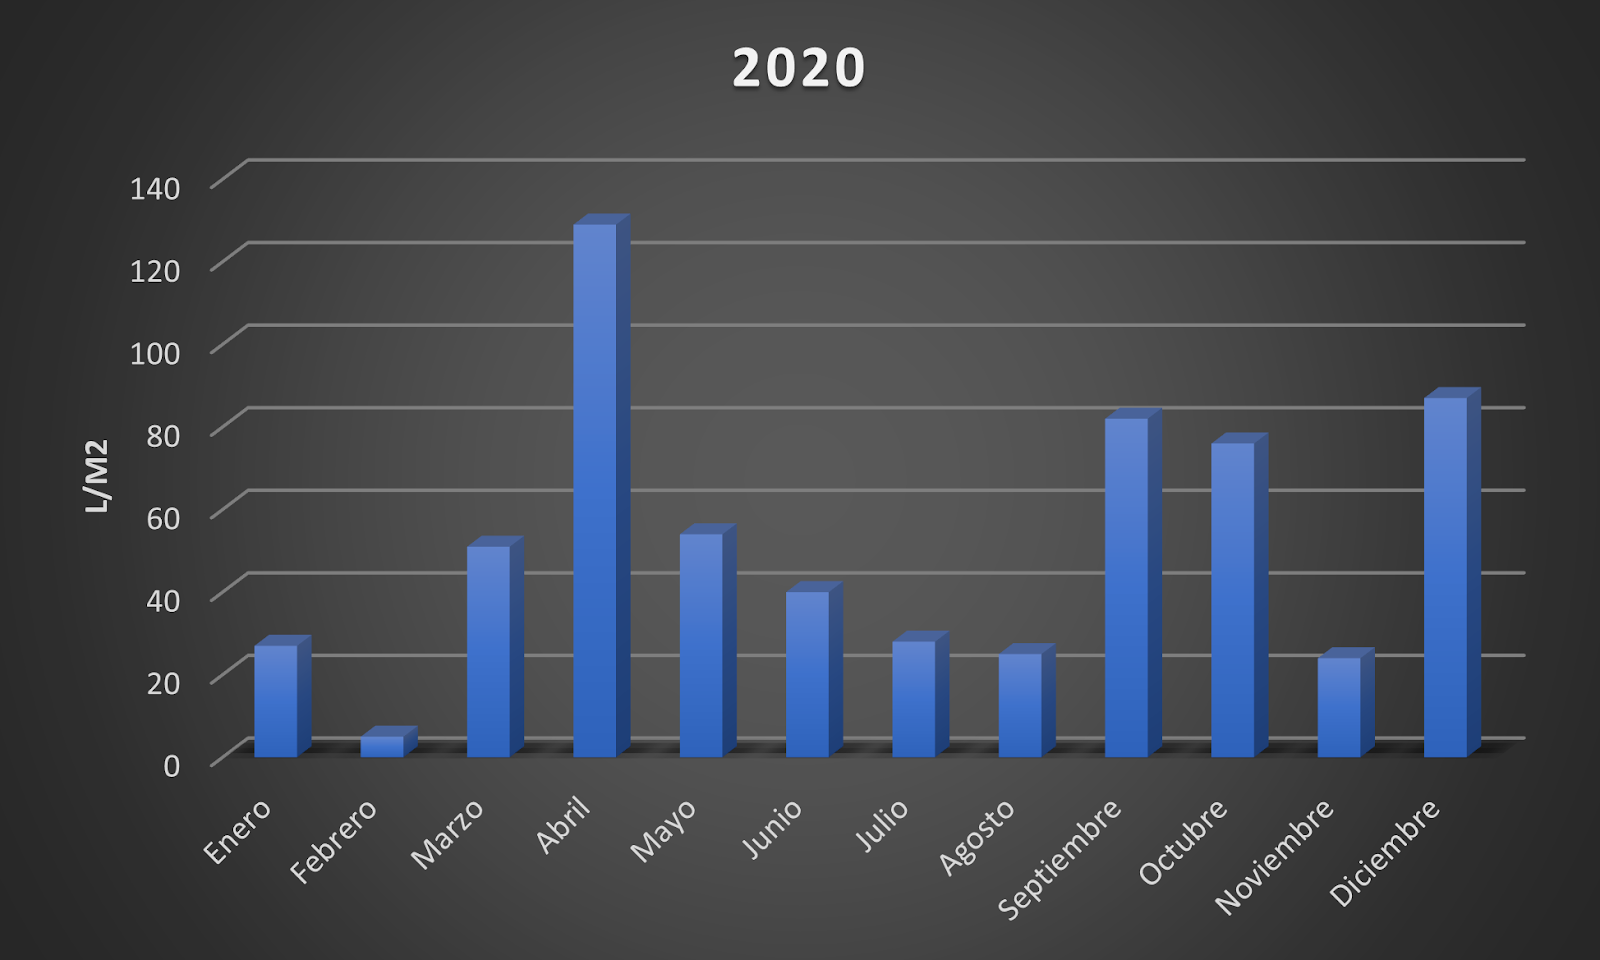 Litros por m² en 2020